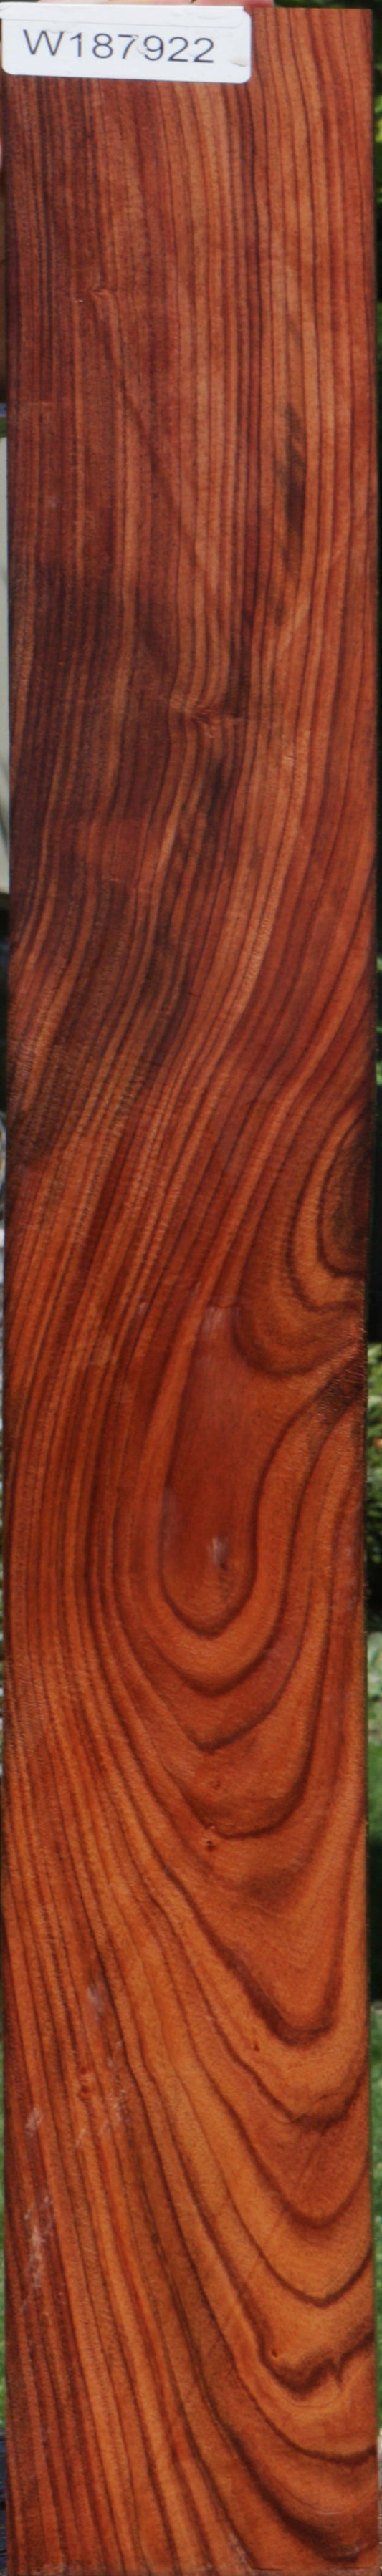 Bolivian Rosewood Micro Lumber